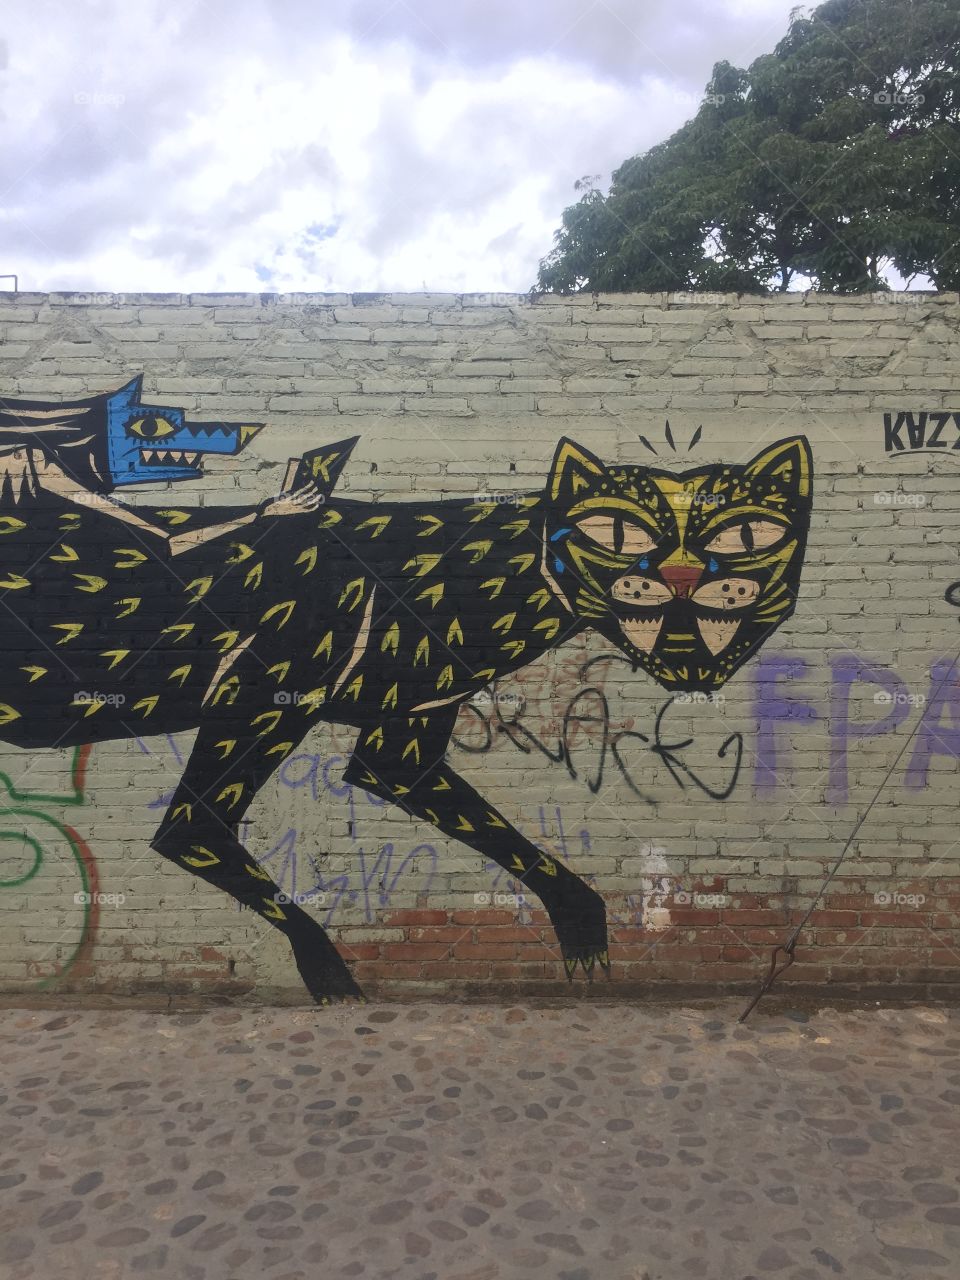 Jaguar graffiti on a brick wall in Oaxaca, Mexico